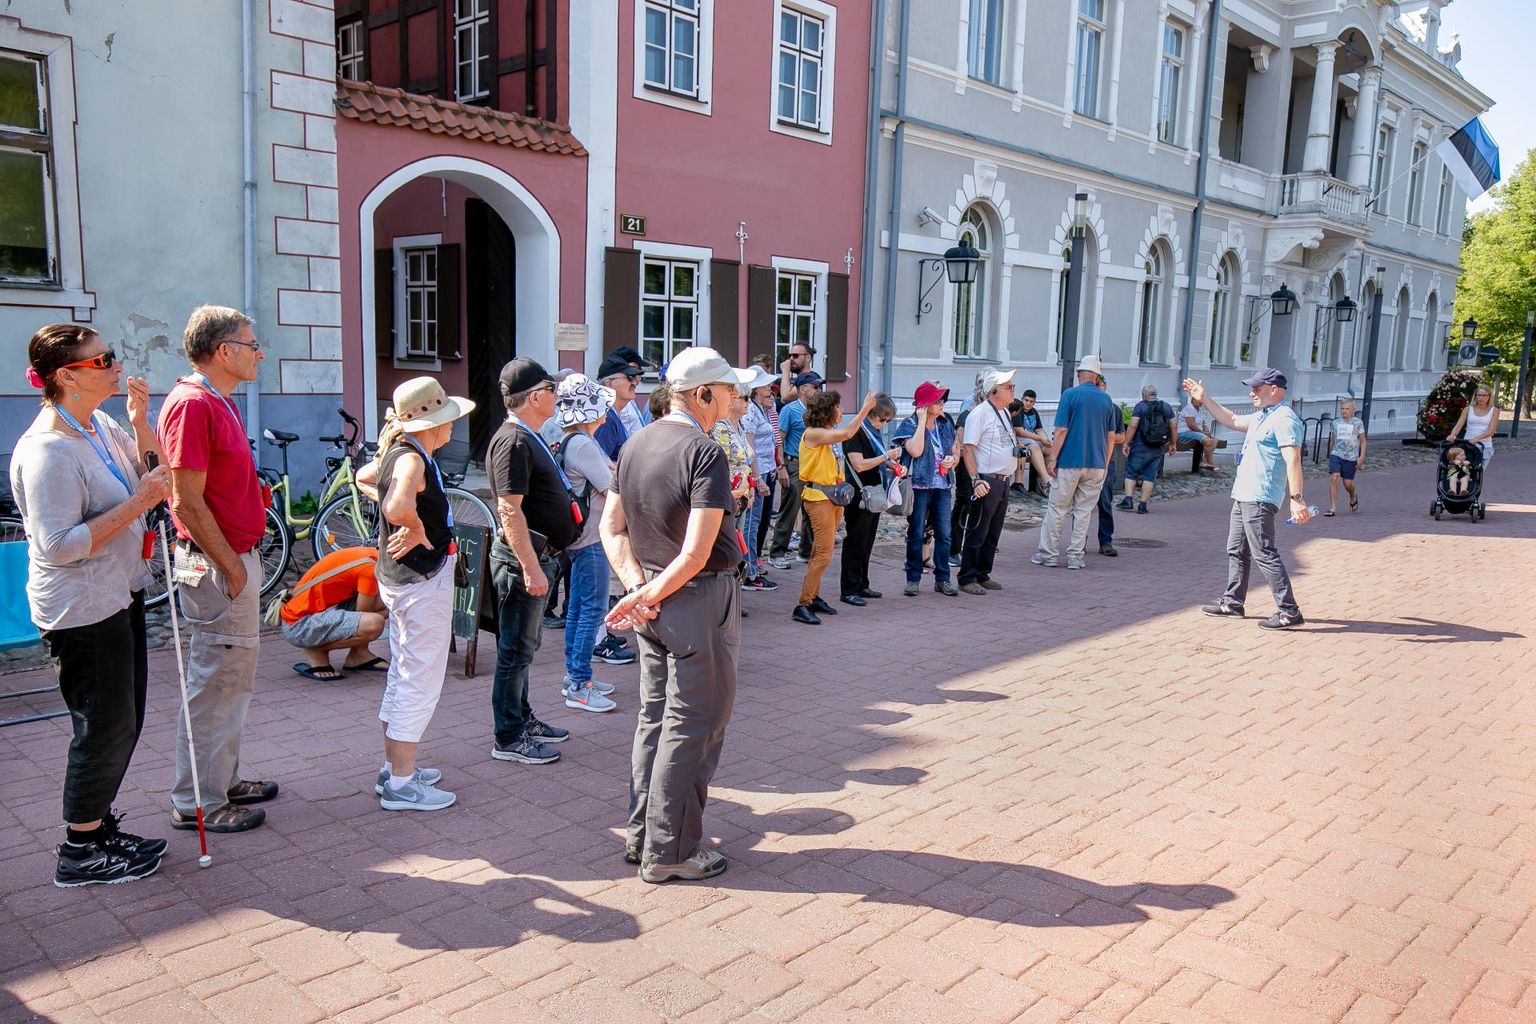 Seda, milliseks kujuneb tänavu Pärnu turismihooaeg, näitab aeg. 